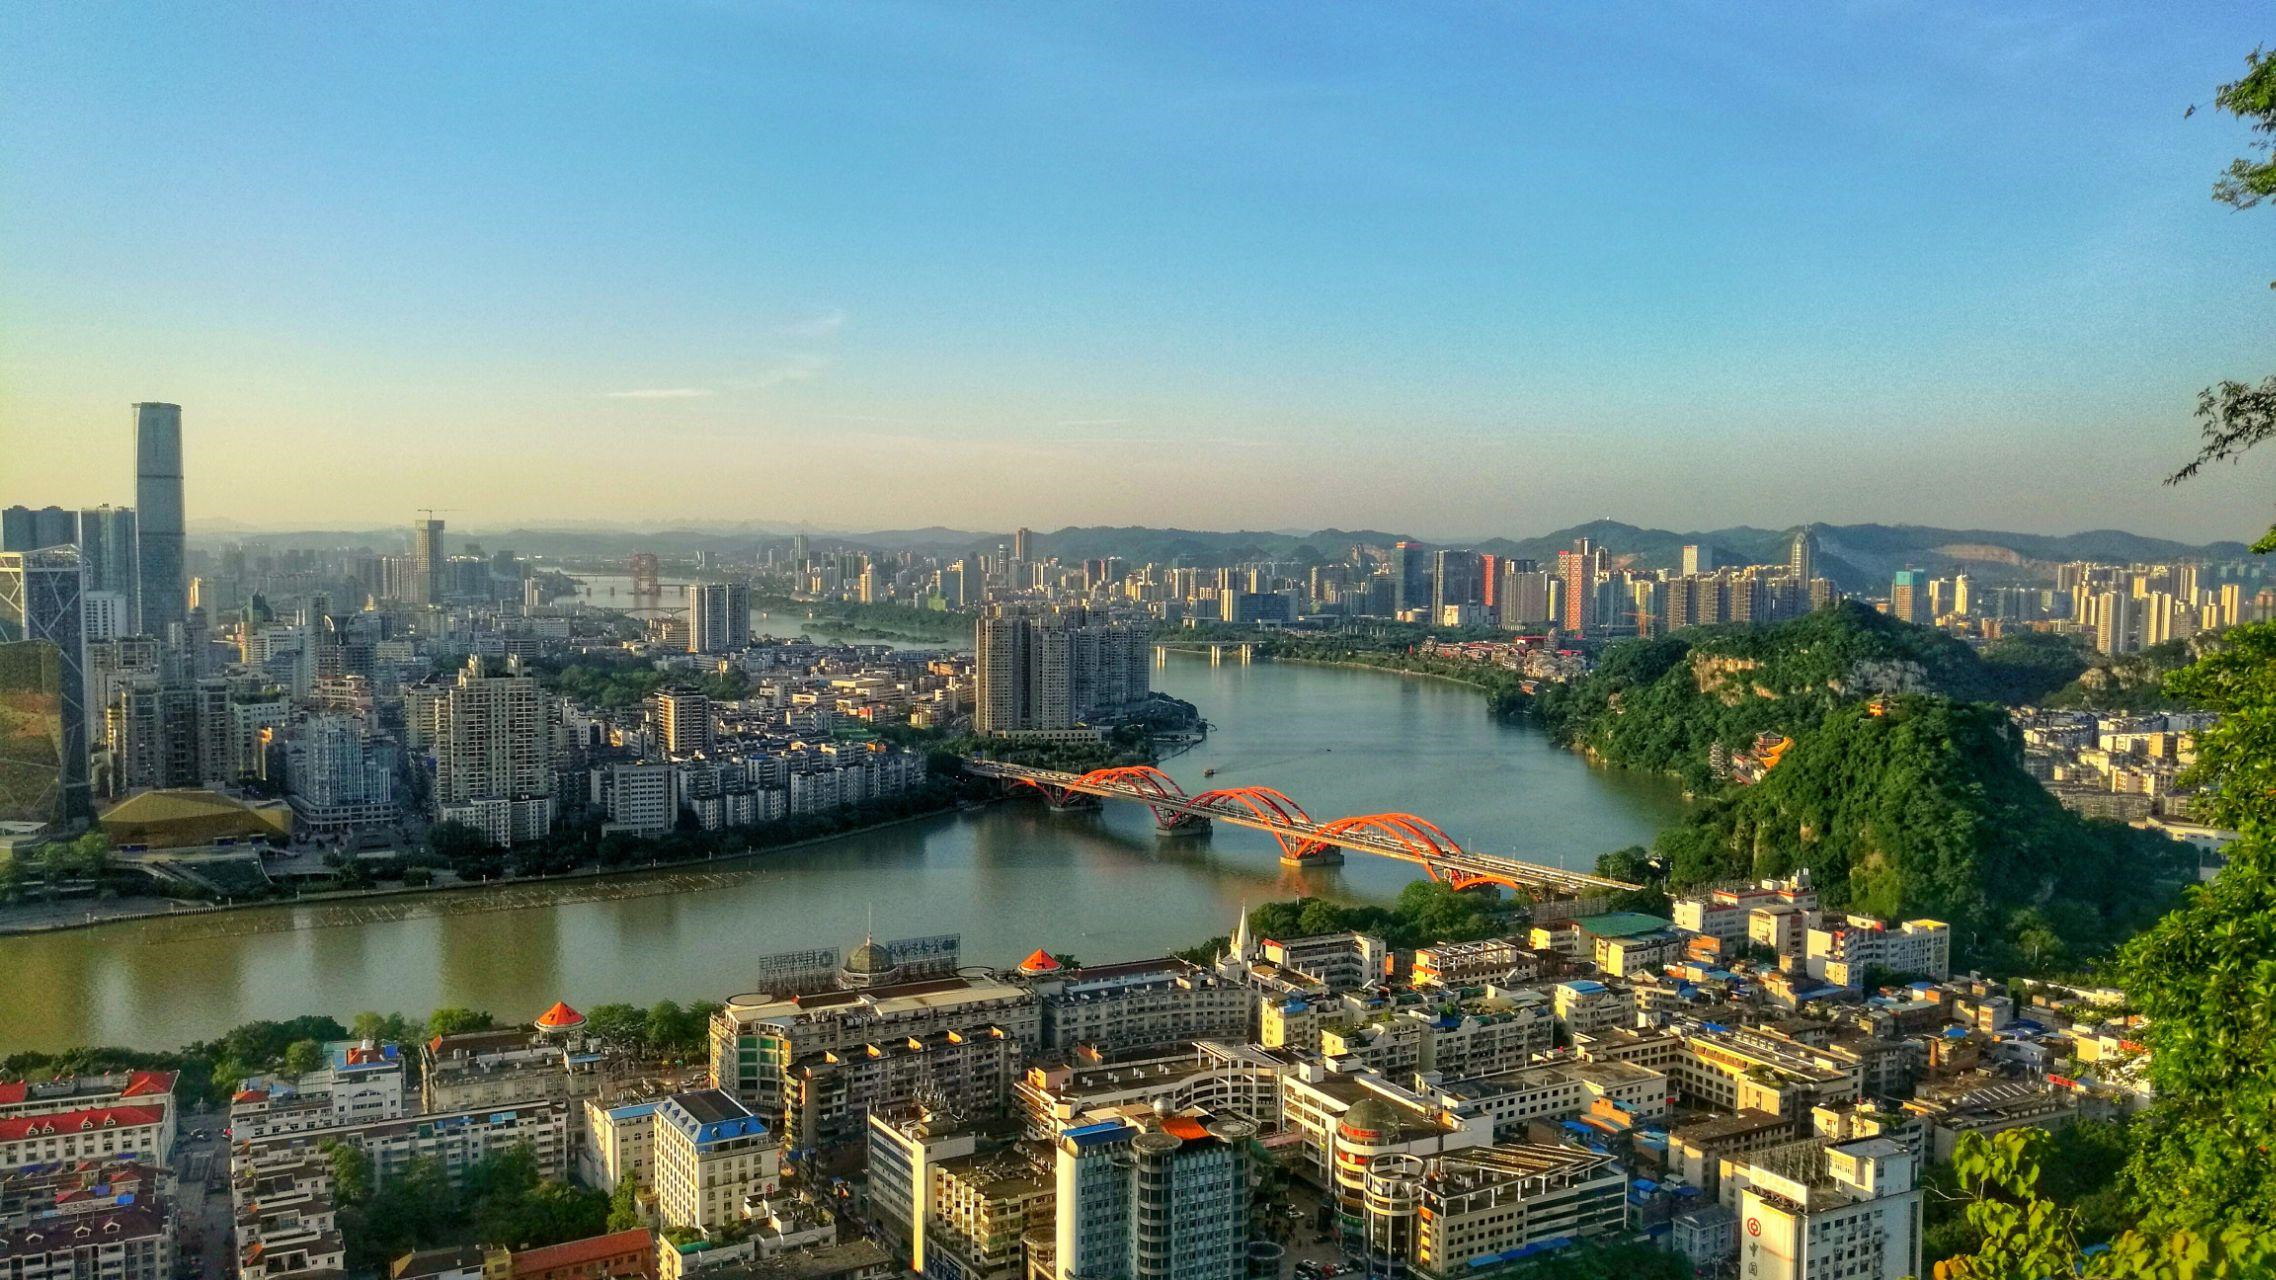 更宜居,柳州要实现20%城建面积海绵化